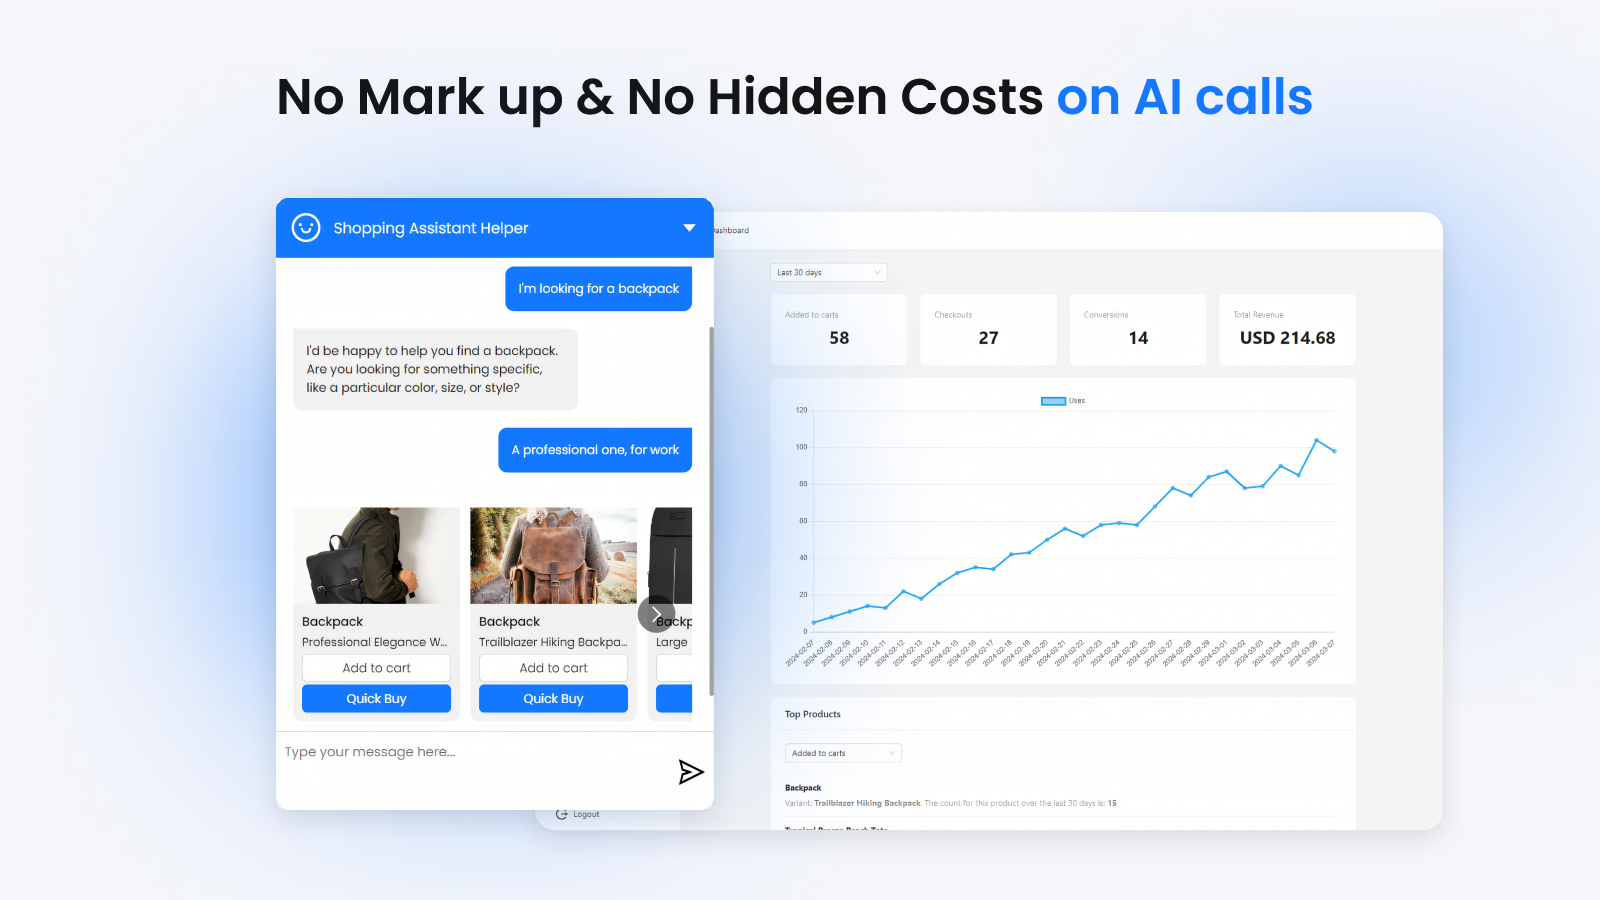 No mark up and no hidden costs on AI calls